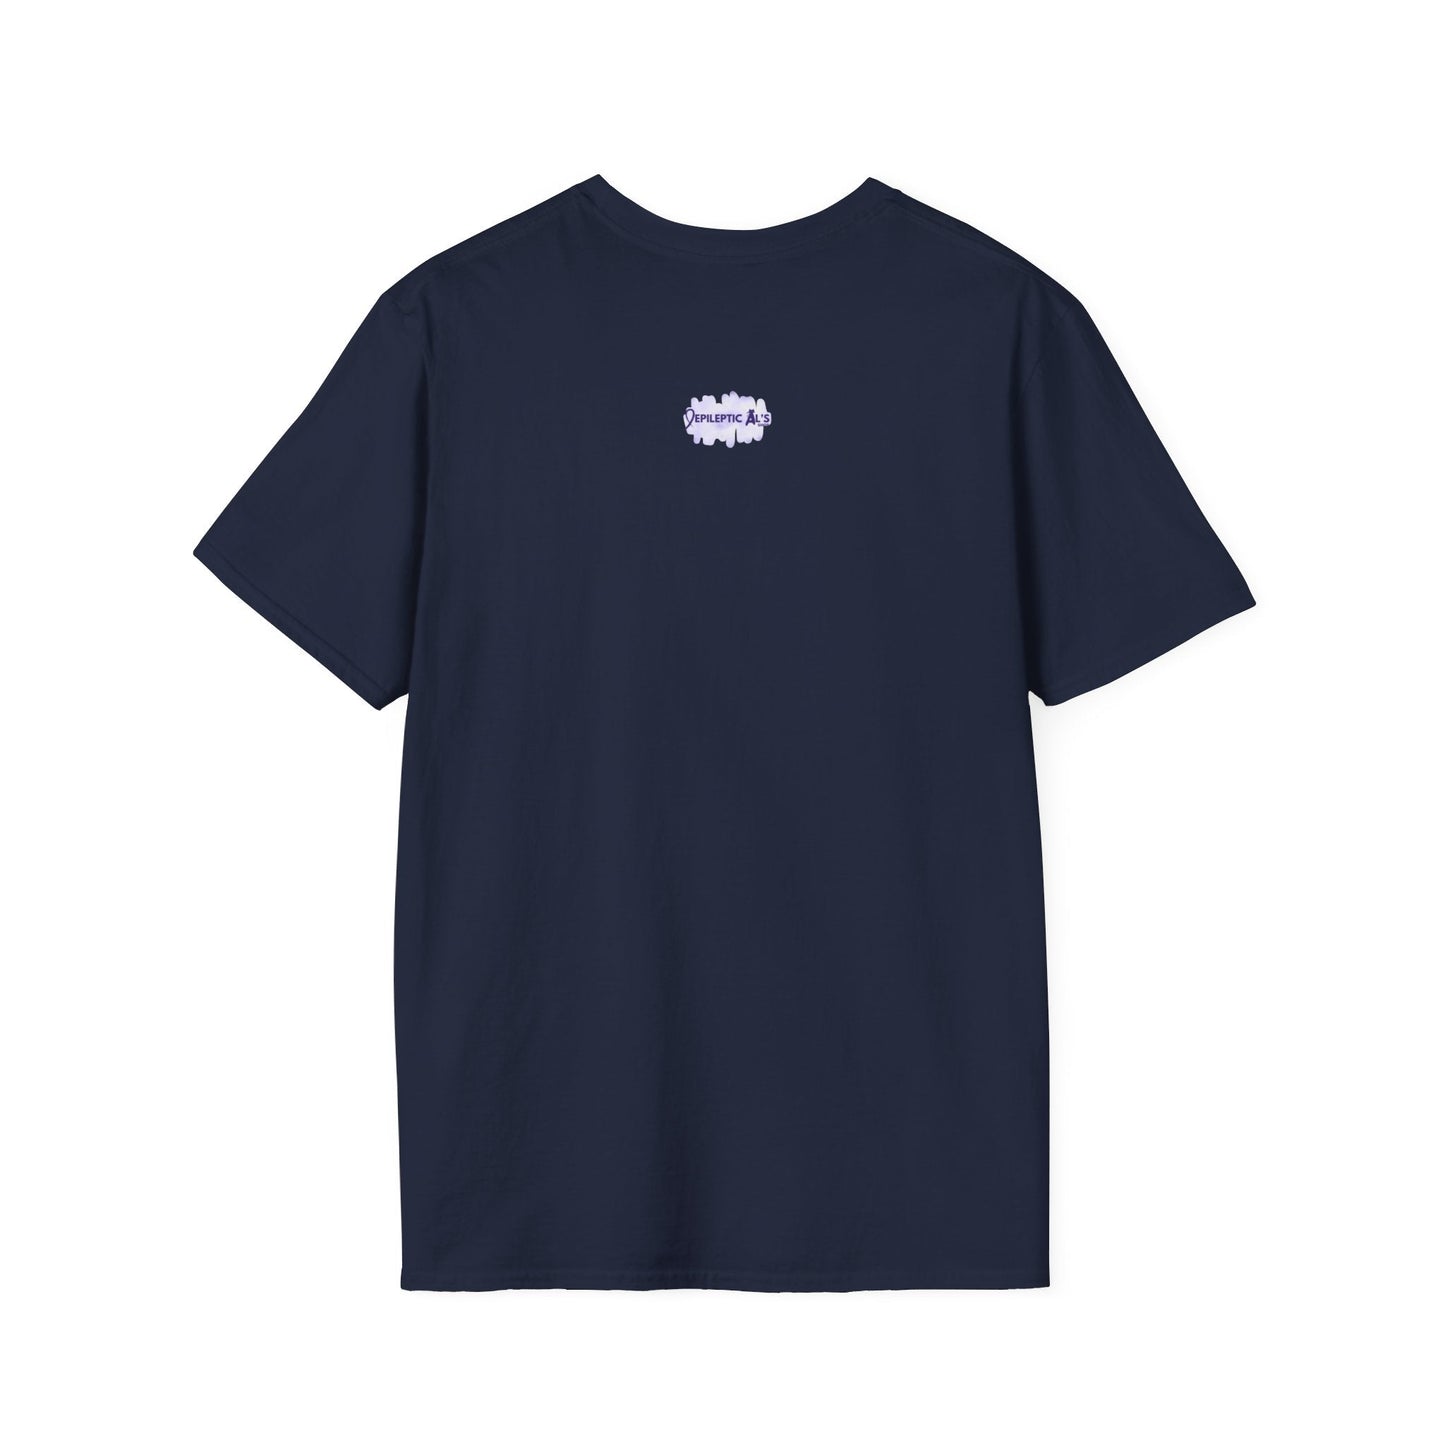 Be Patient Unisex Softstyle T - Shirt - T - Shirt - Epileptic Al’s Shop